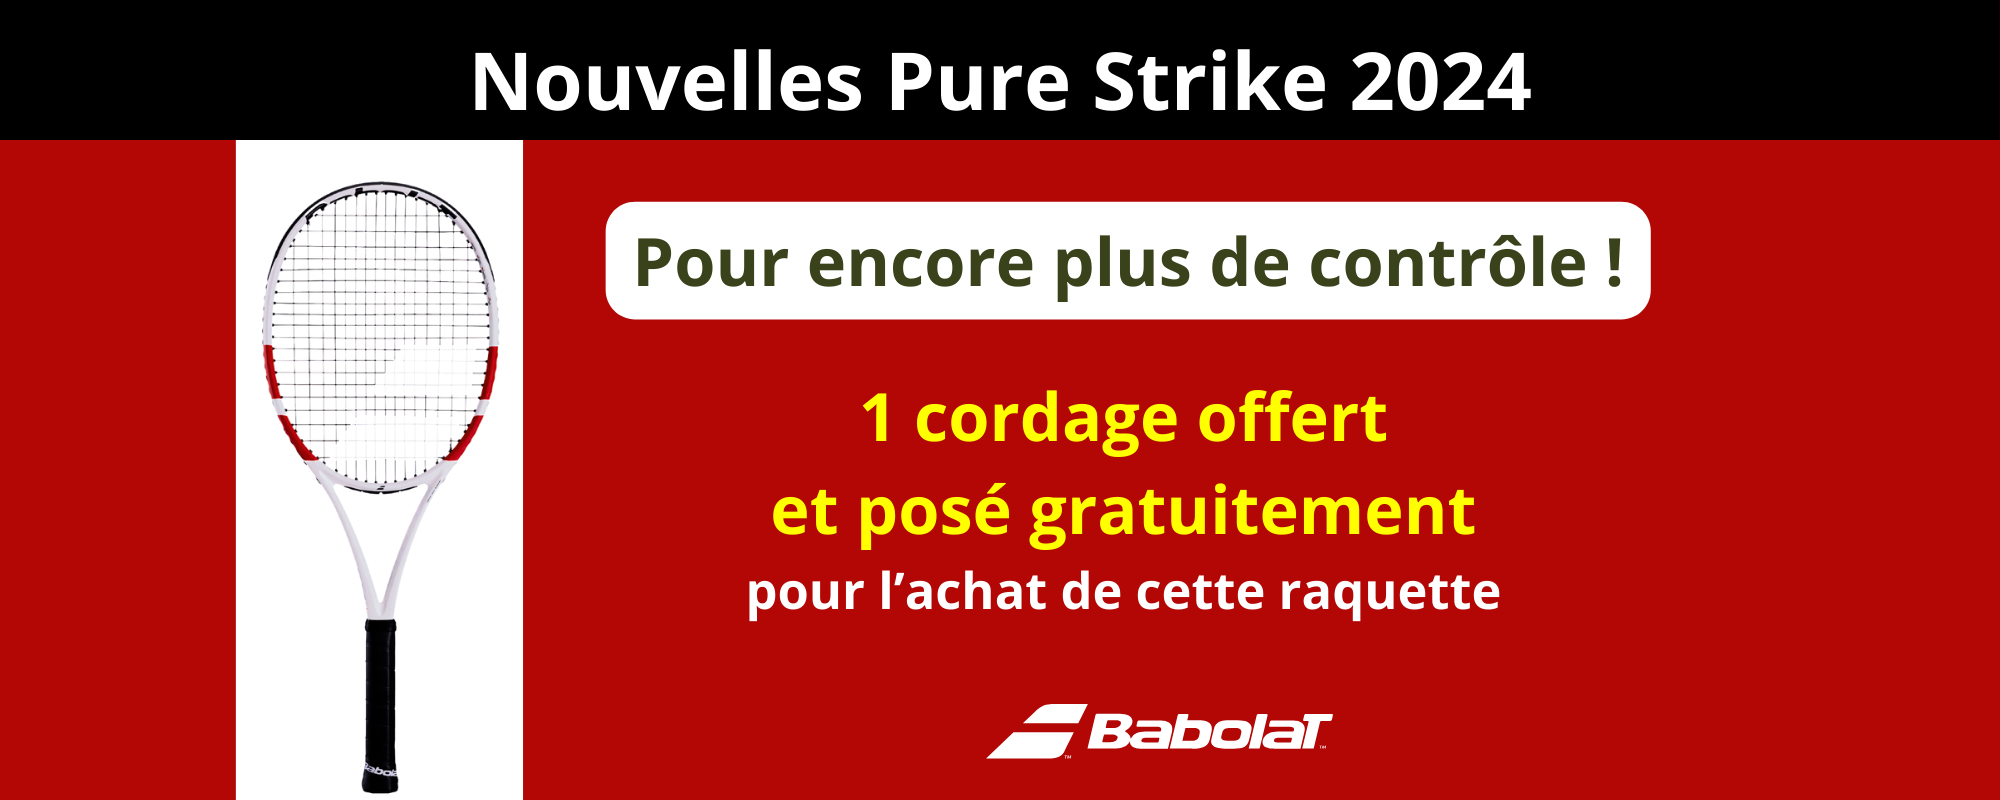 Nouvelles Babolat Pure Strike 2024